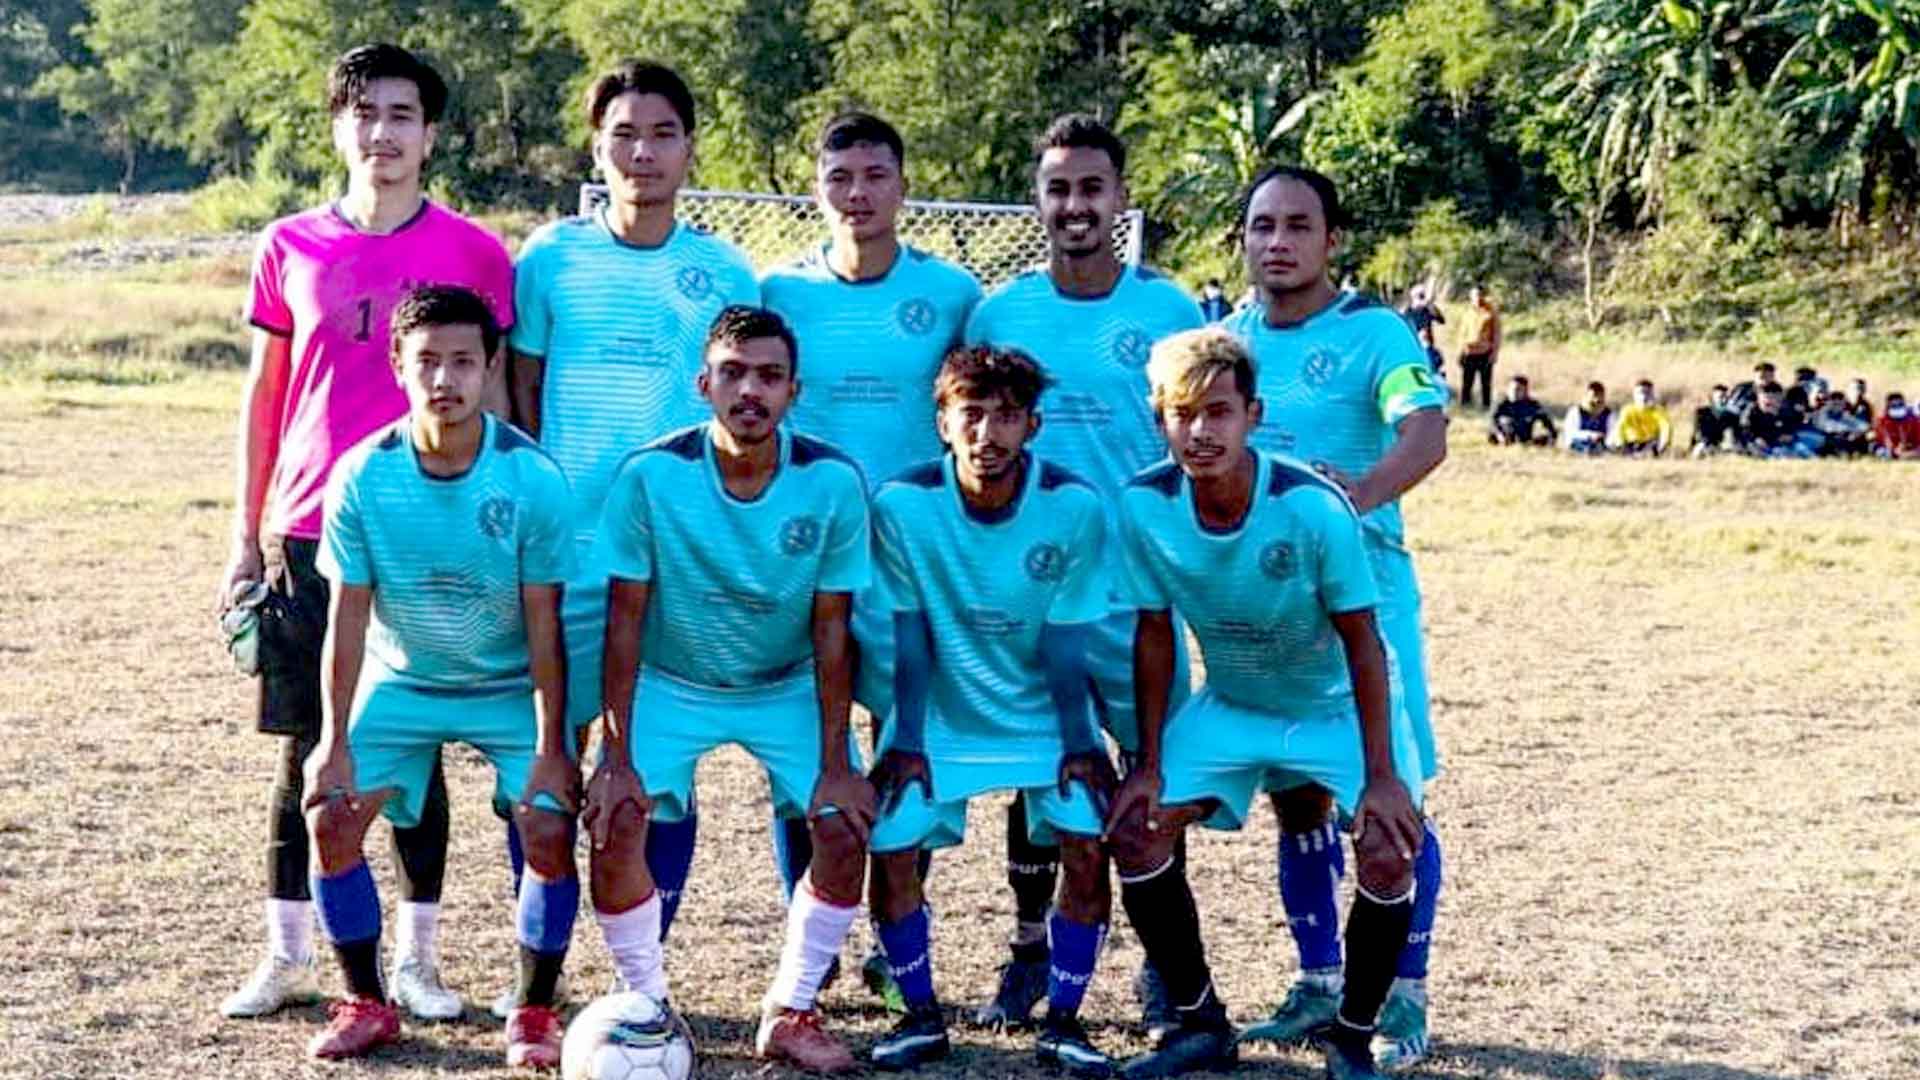 आरुघाट गण्डकी फुटबल क्लबले जित्यो त्रिपुरासुन्दरी कप फुटबलको उपाधी